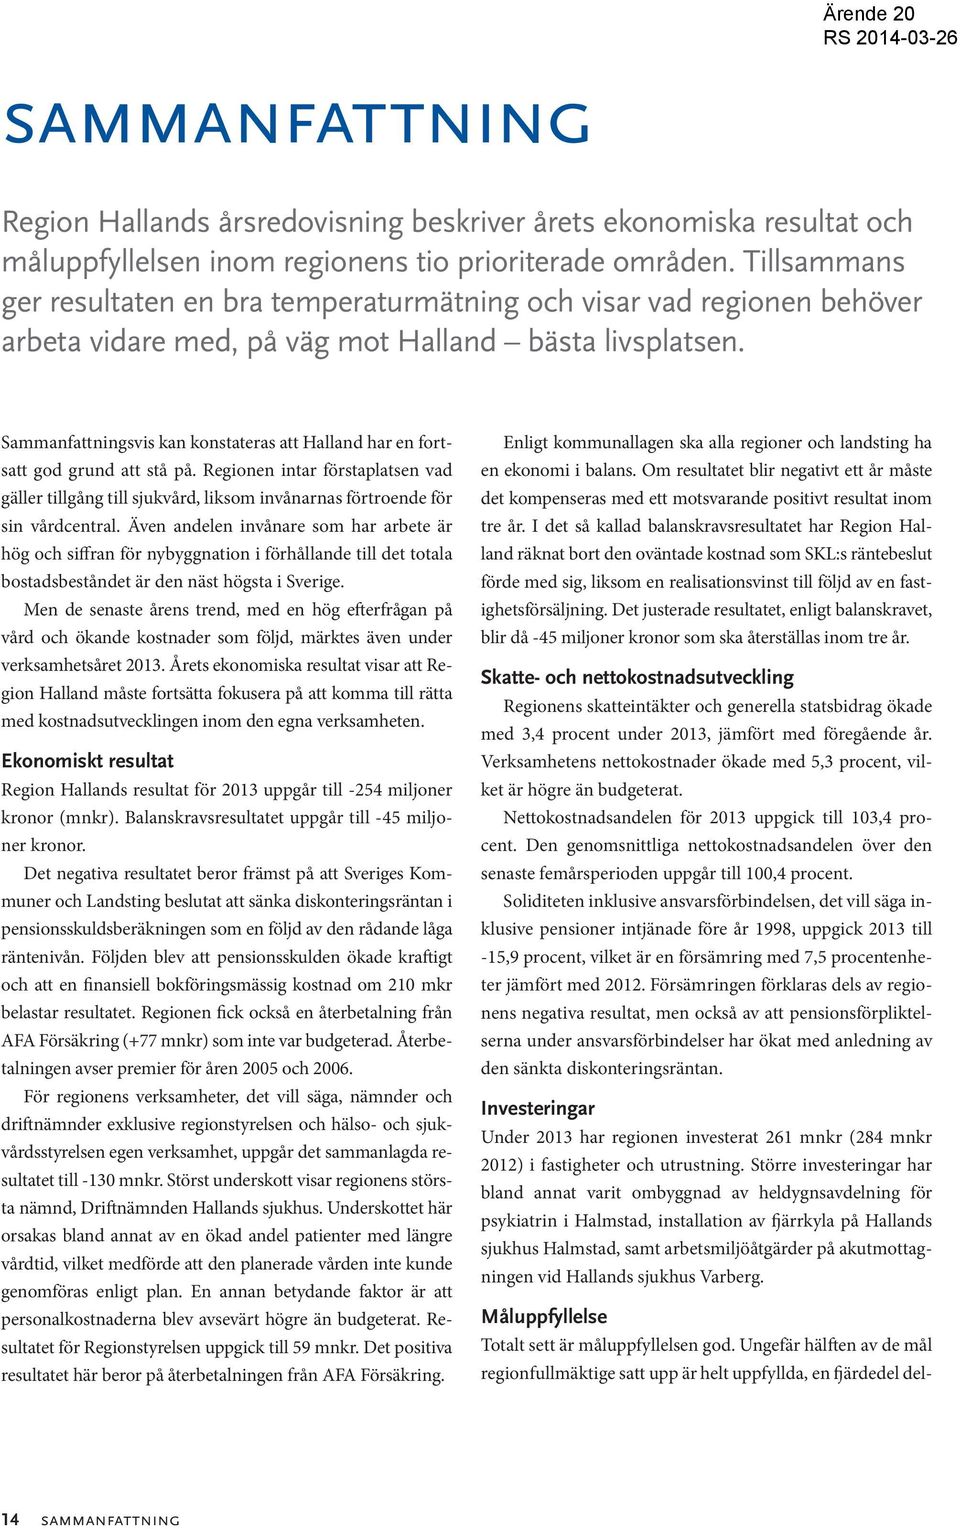 Sammanfattningsvis kan konstateras att Halland har en fortsatt god grund att stå på. Regionen intar förstaplatsen vad gäller tillgång till sjukvård, liksom invånarnas förtroende för sin vårdcentral.